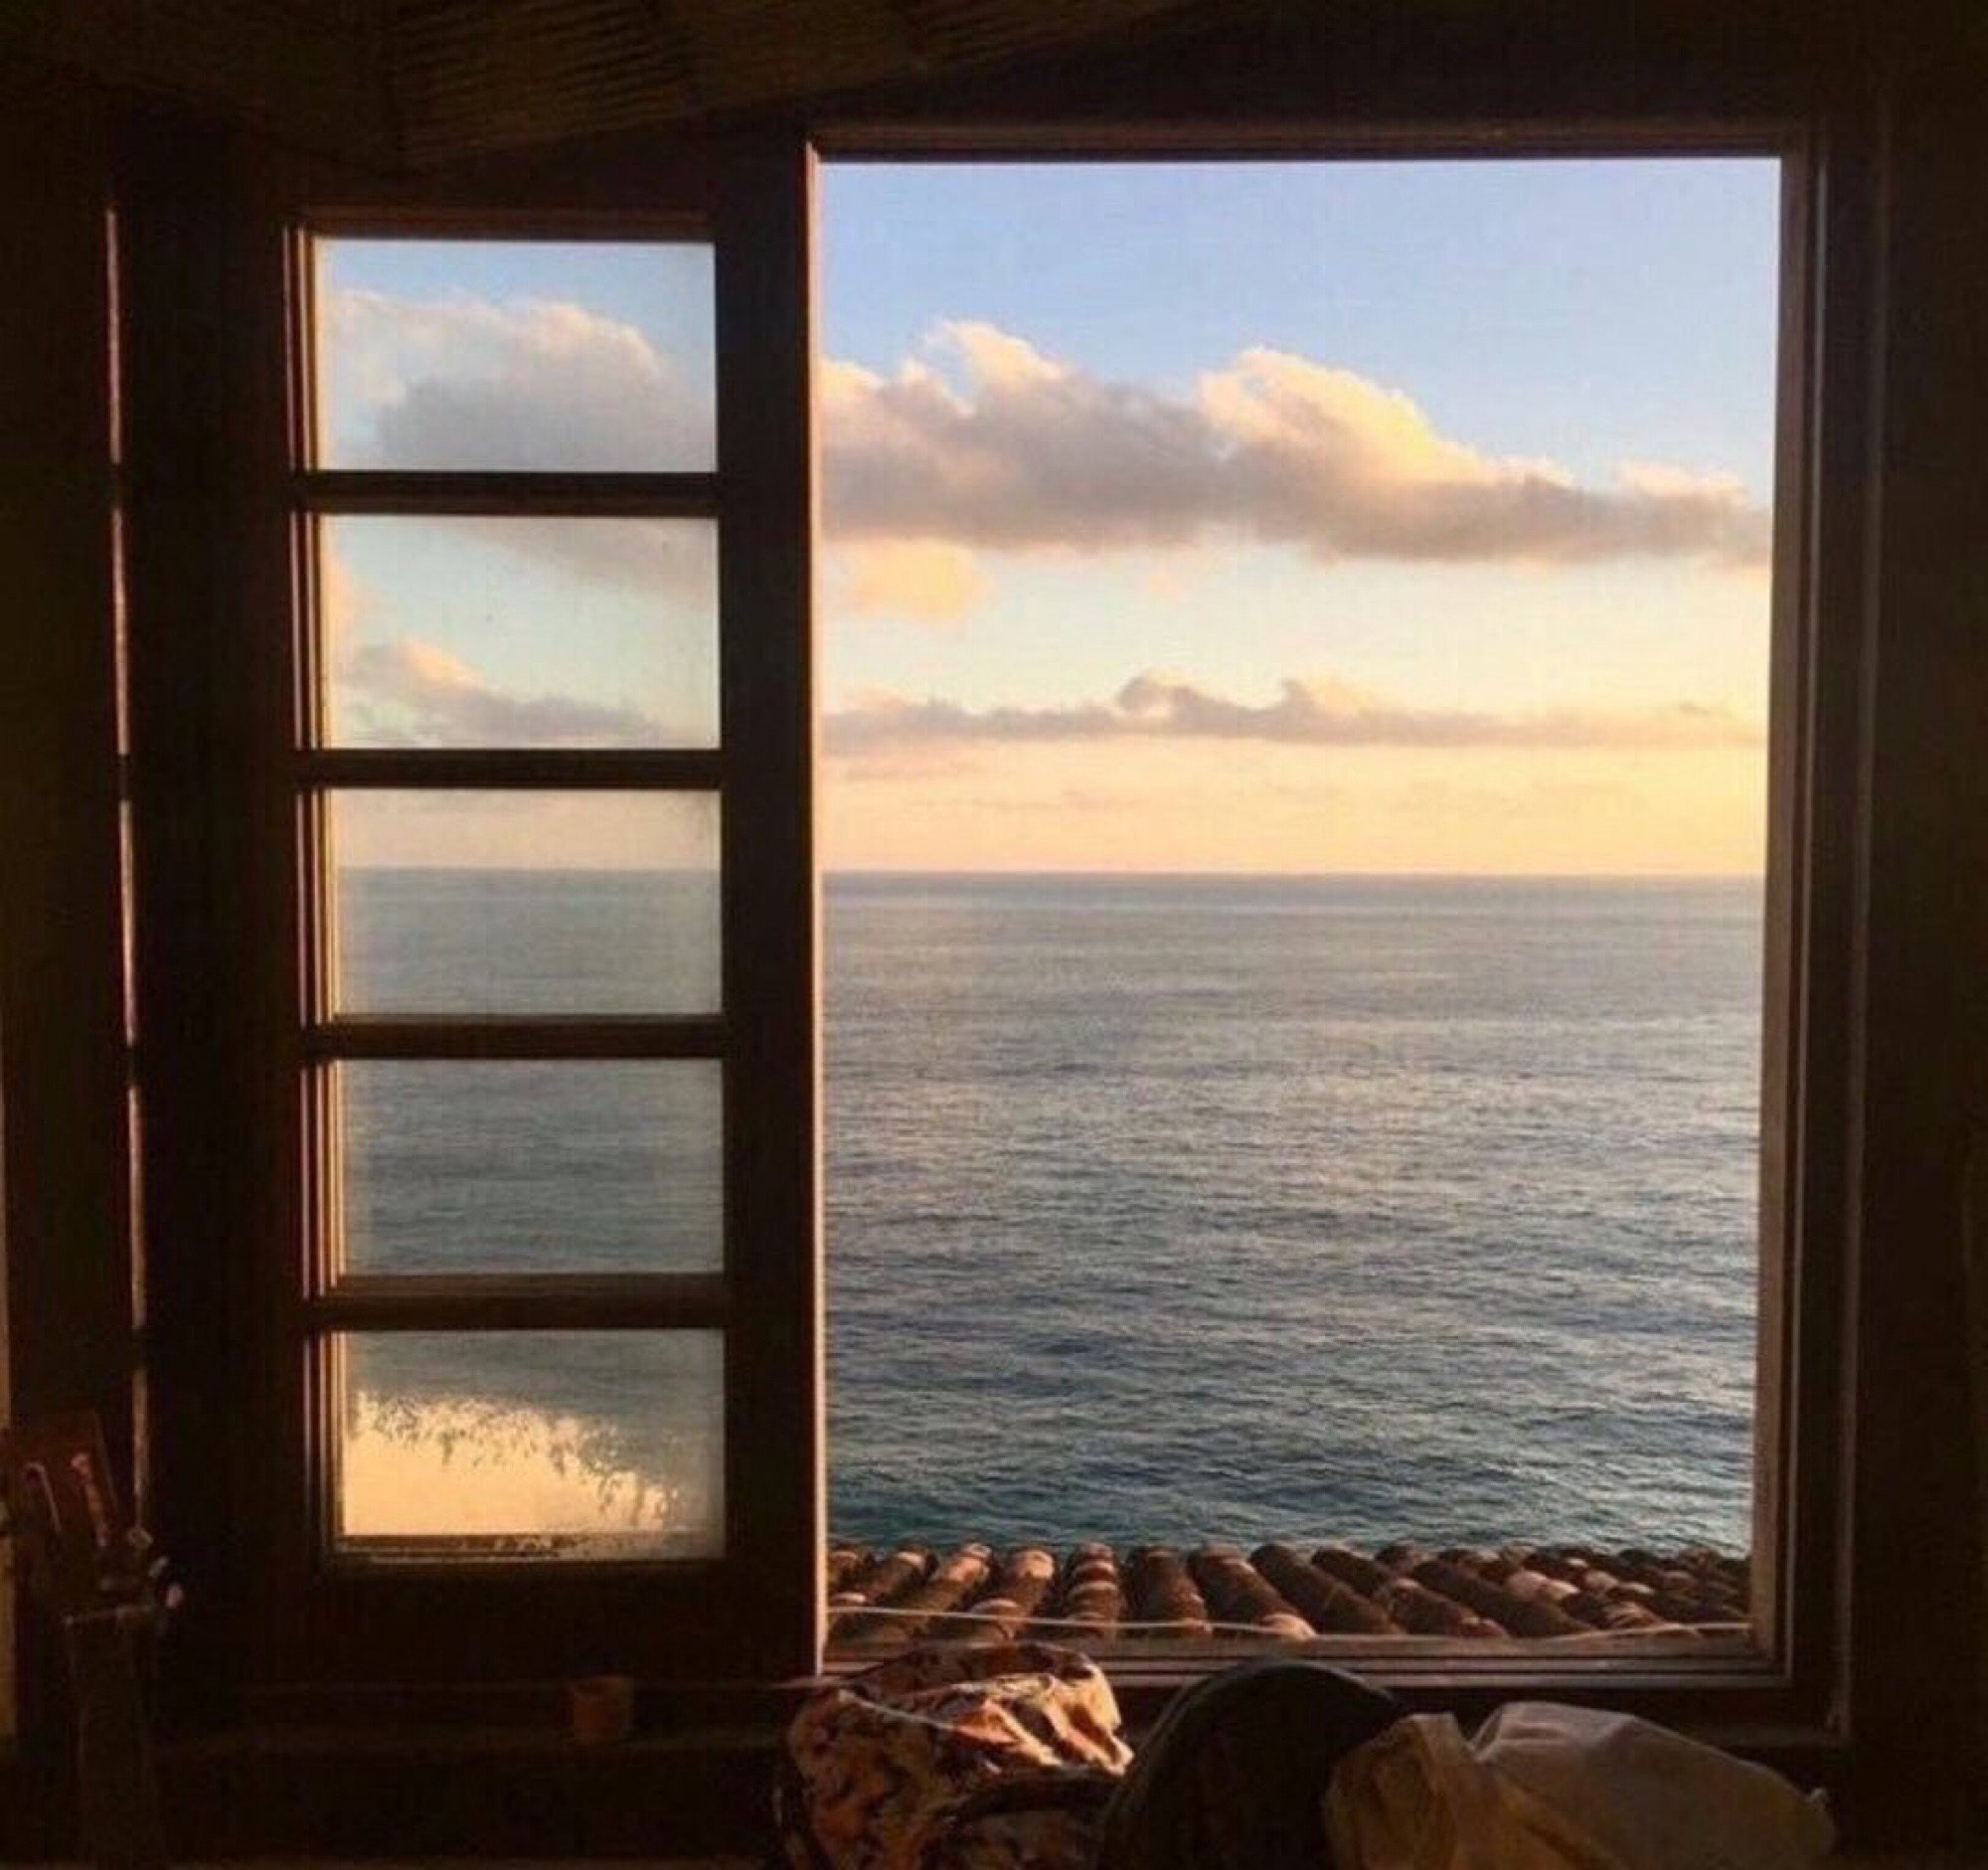 The view is beautiful. Прекрасный вид из окна. Вид из окна на море. Красивый вид из окна на море. Шикарный вид на море.